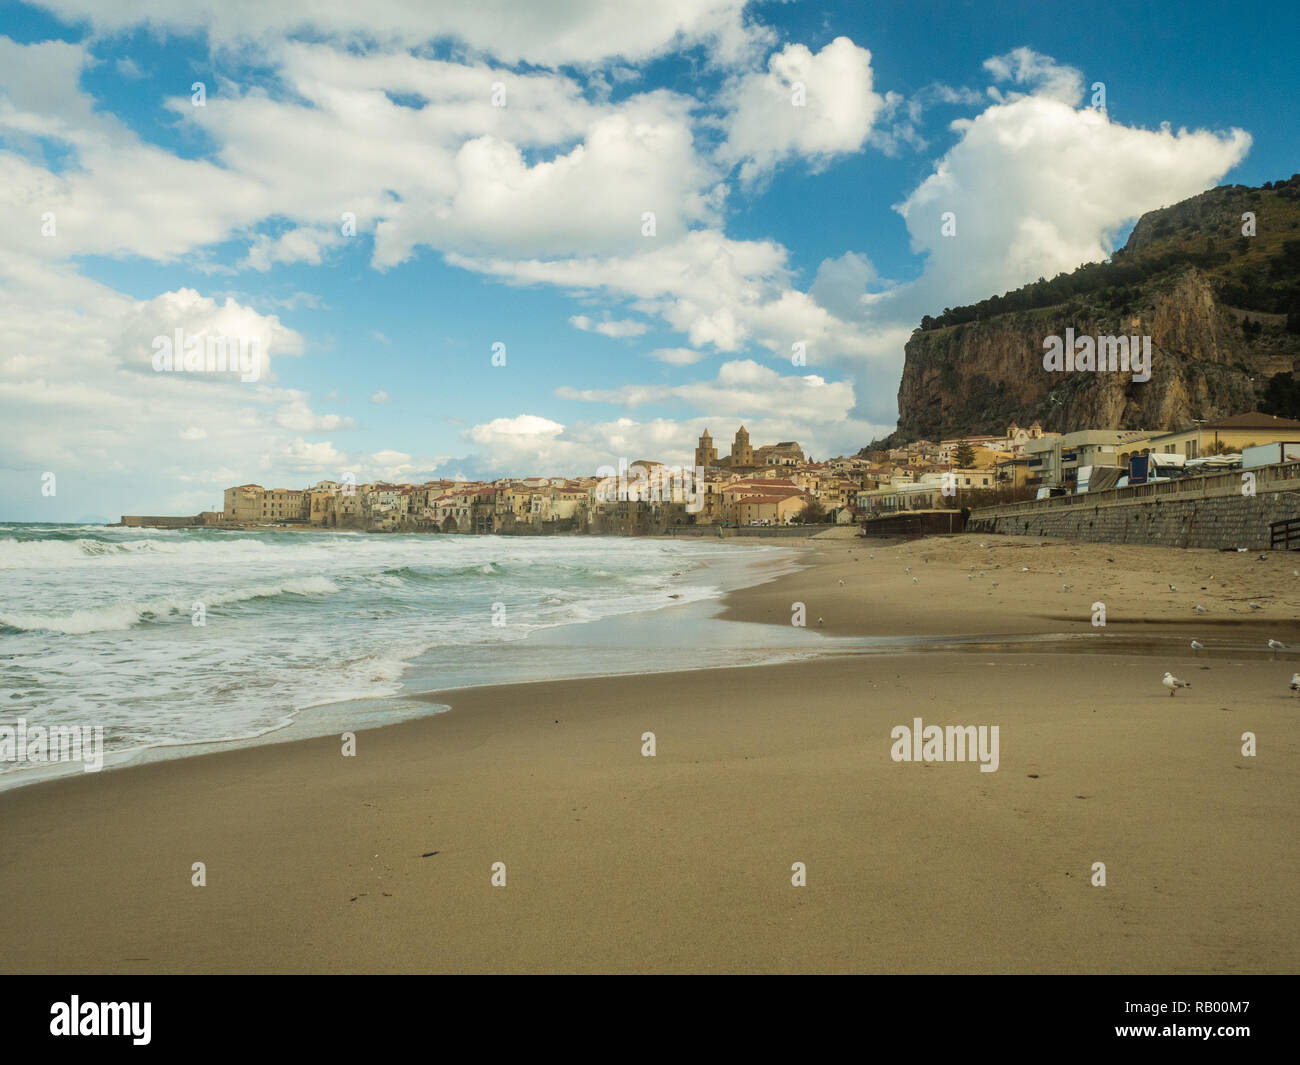 La plage et de la ville de Cefalù, avec sa cathédrale, le nord de la Sicile, Italie Banque D'Images